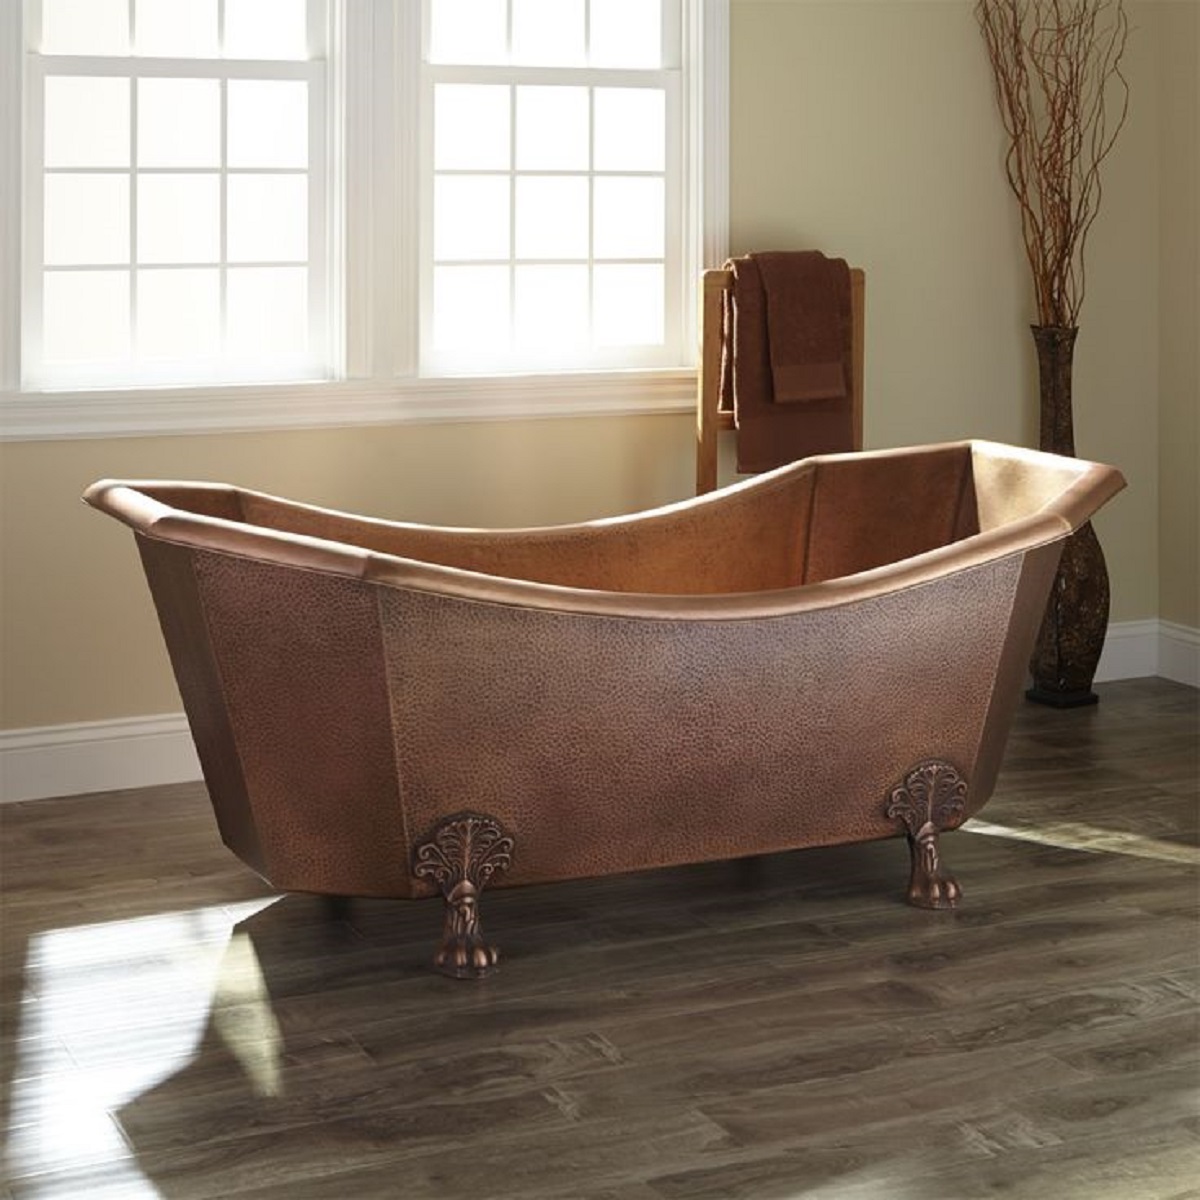 copper clawfood bathtub in a rustic bathroom